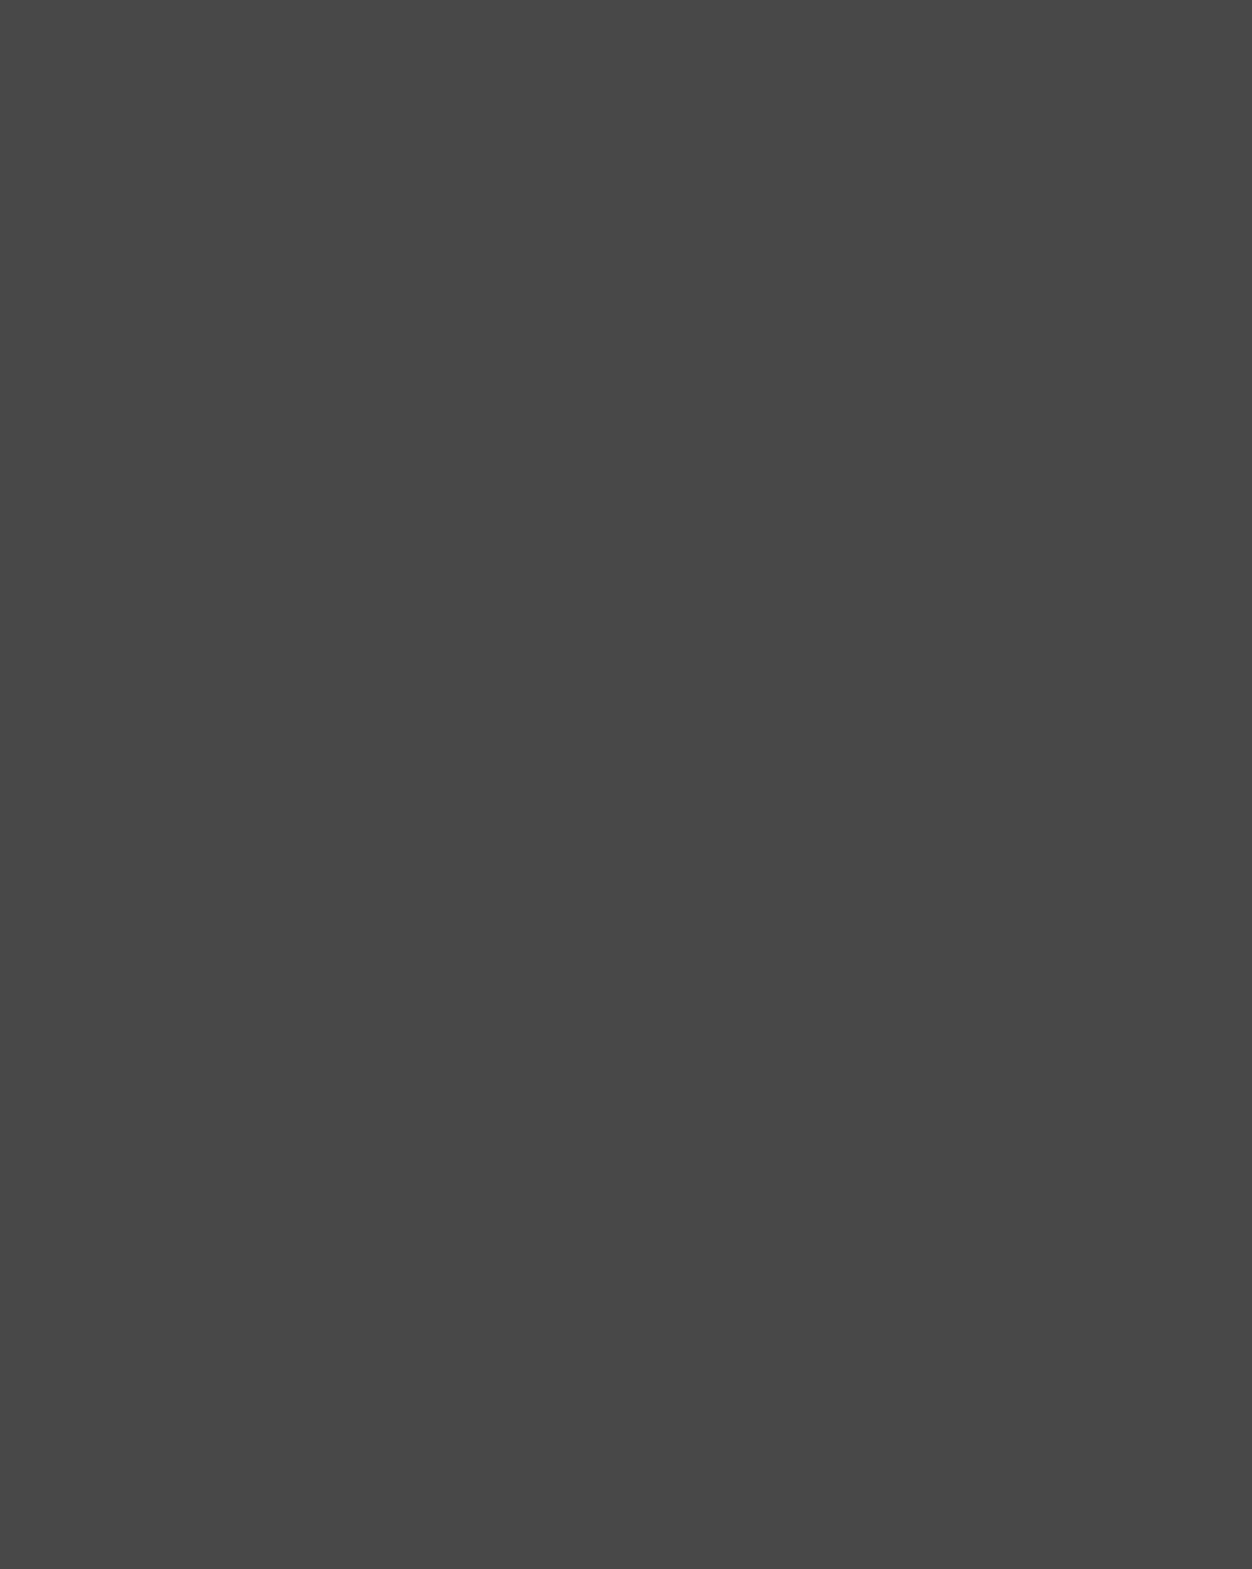 Поэтесса Анна Ахматова. Петроград, 1922 год. Фотография: Моисей Наппельбаум / Государственный литературно-мемориальный музей Анны Ахматовой в Фонтанном Доме, Санкт-Петербург